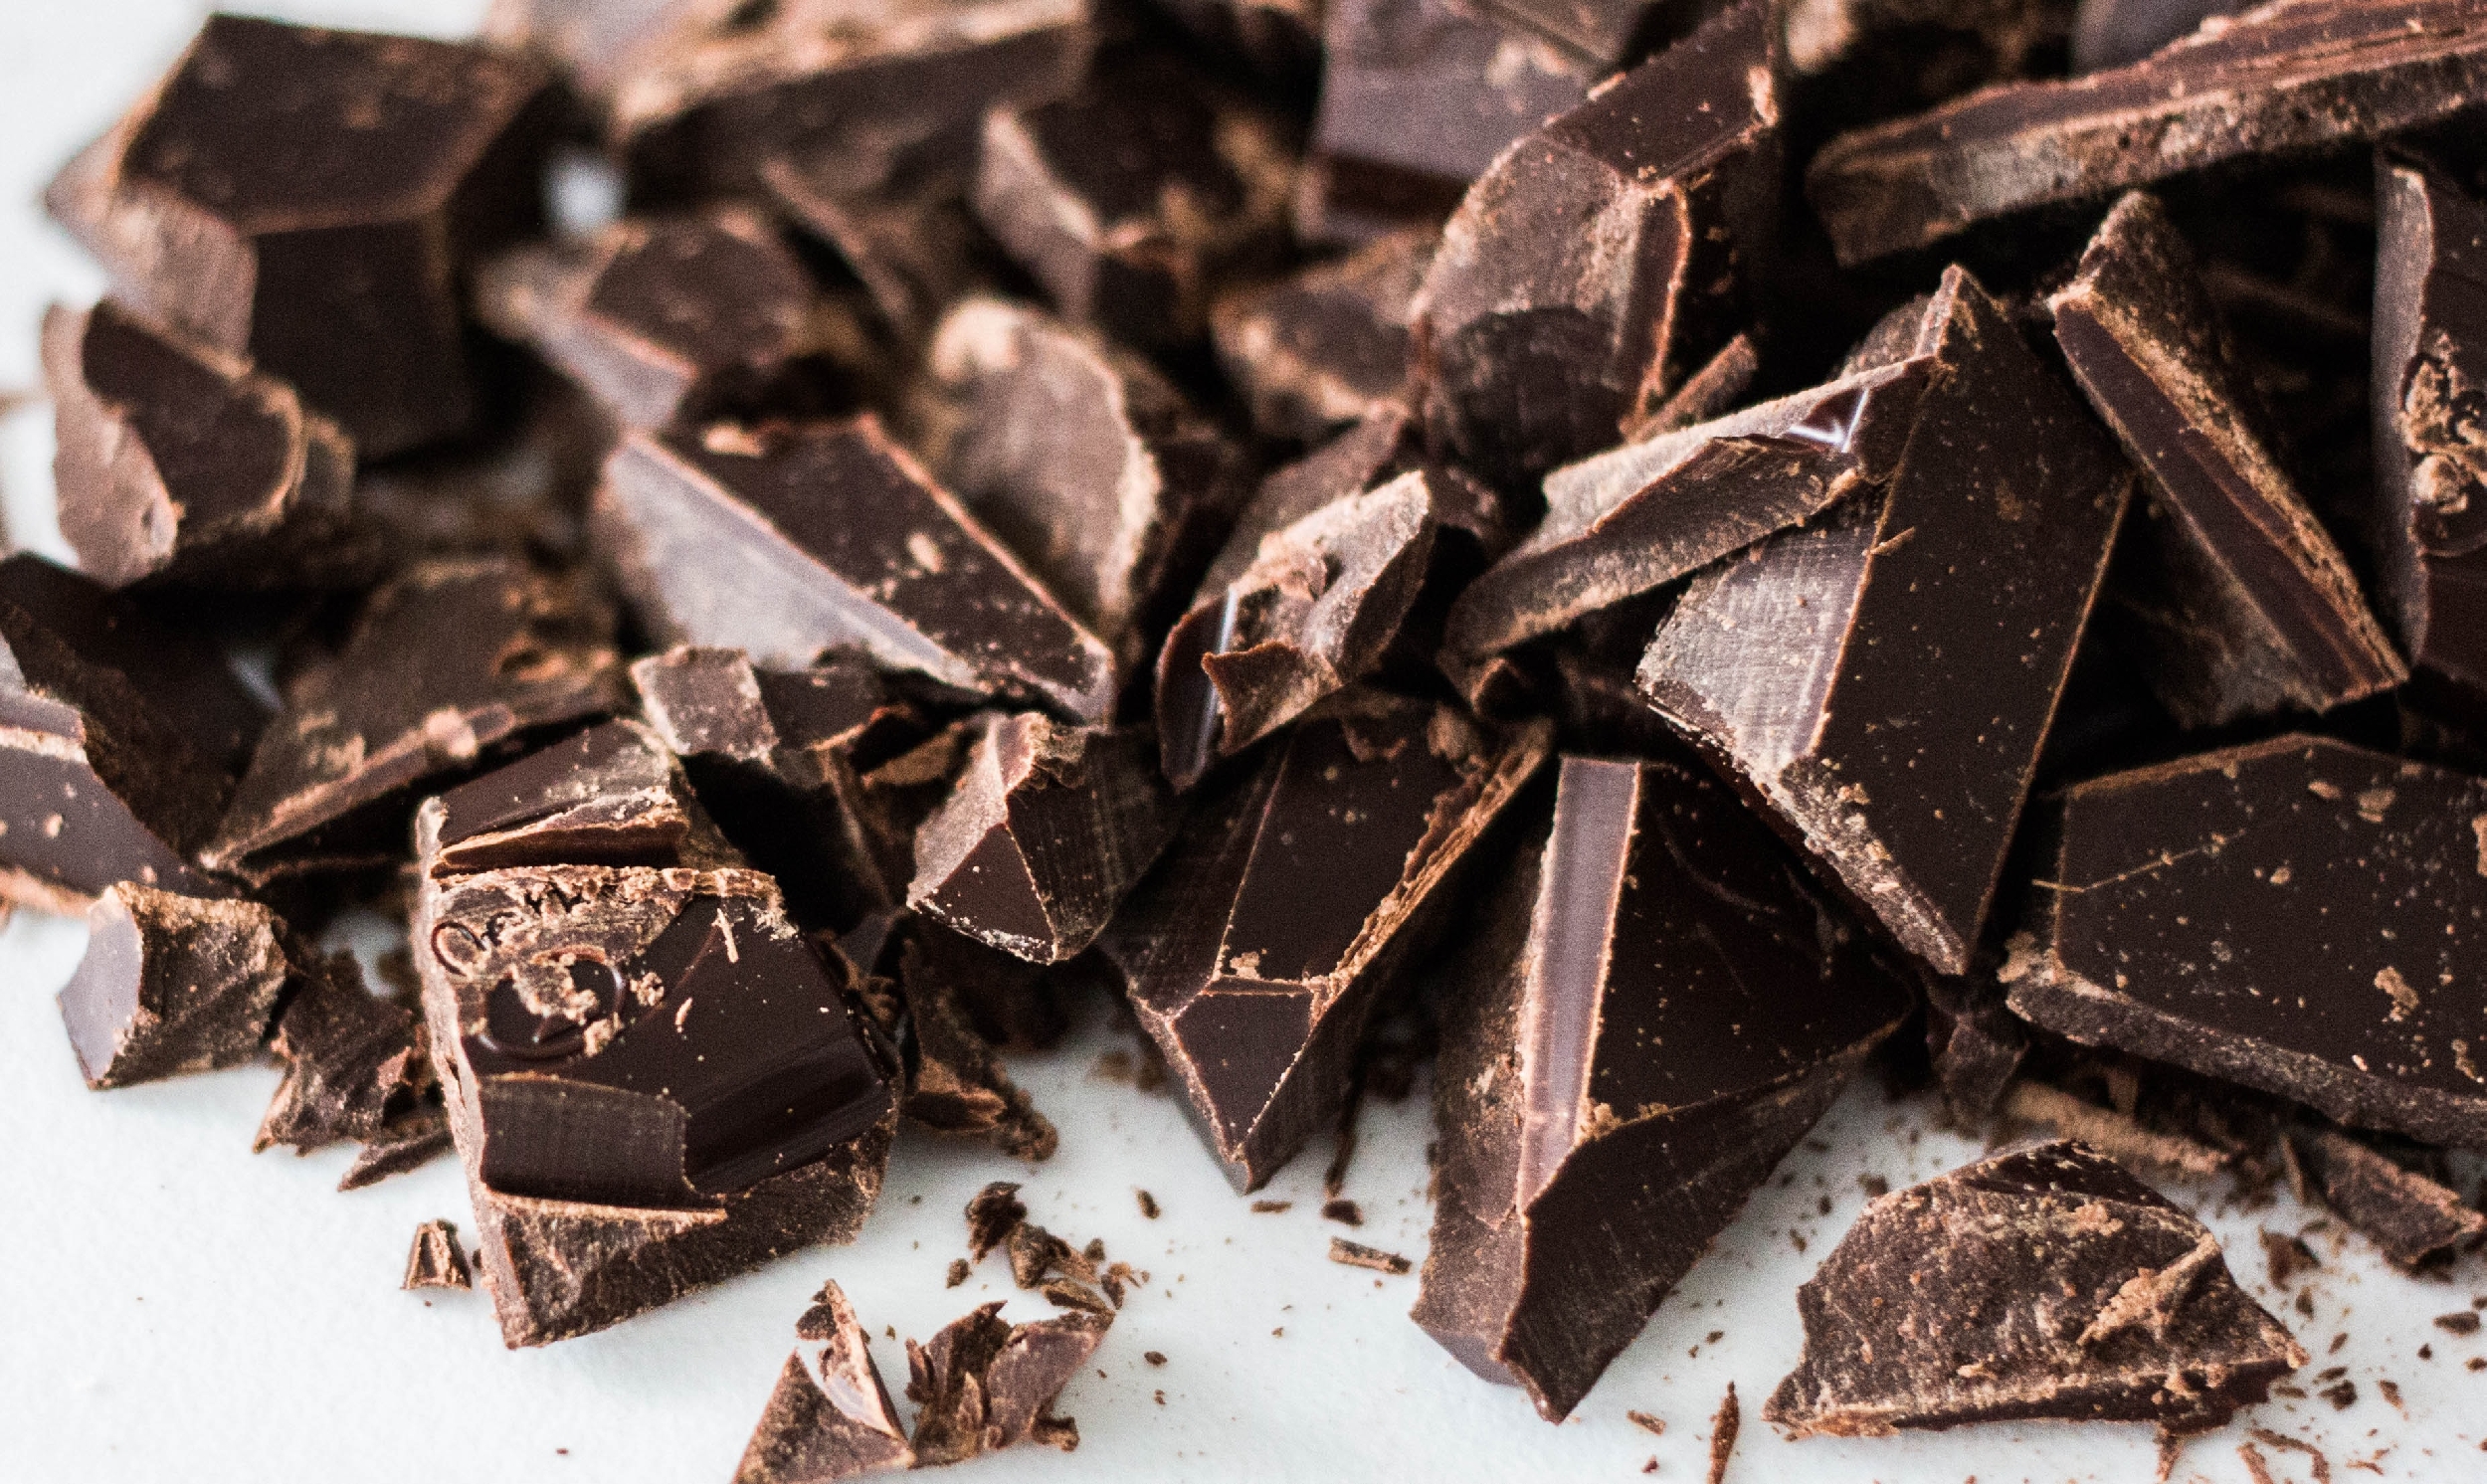 Hořká čokoláda může podporovat dobré zdraví. Jakým způsobem?